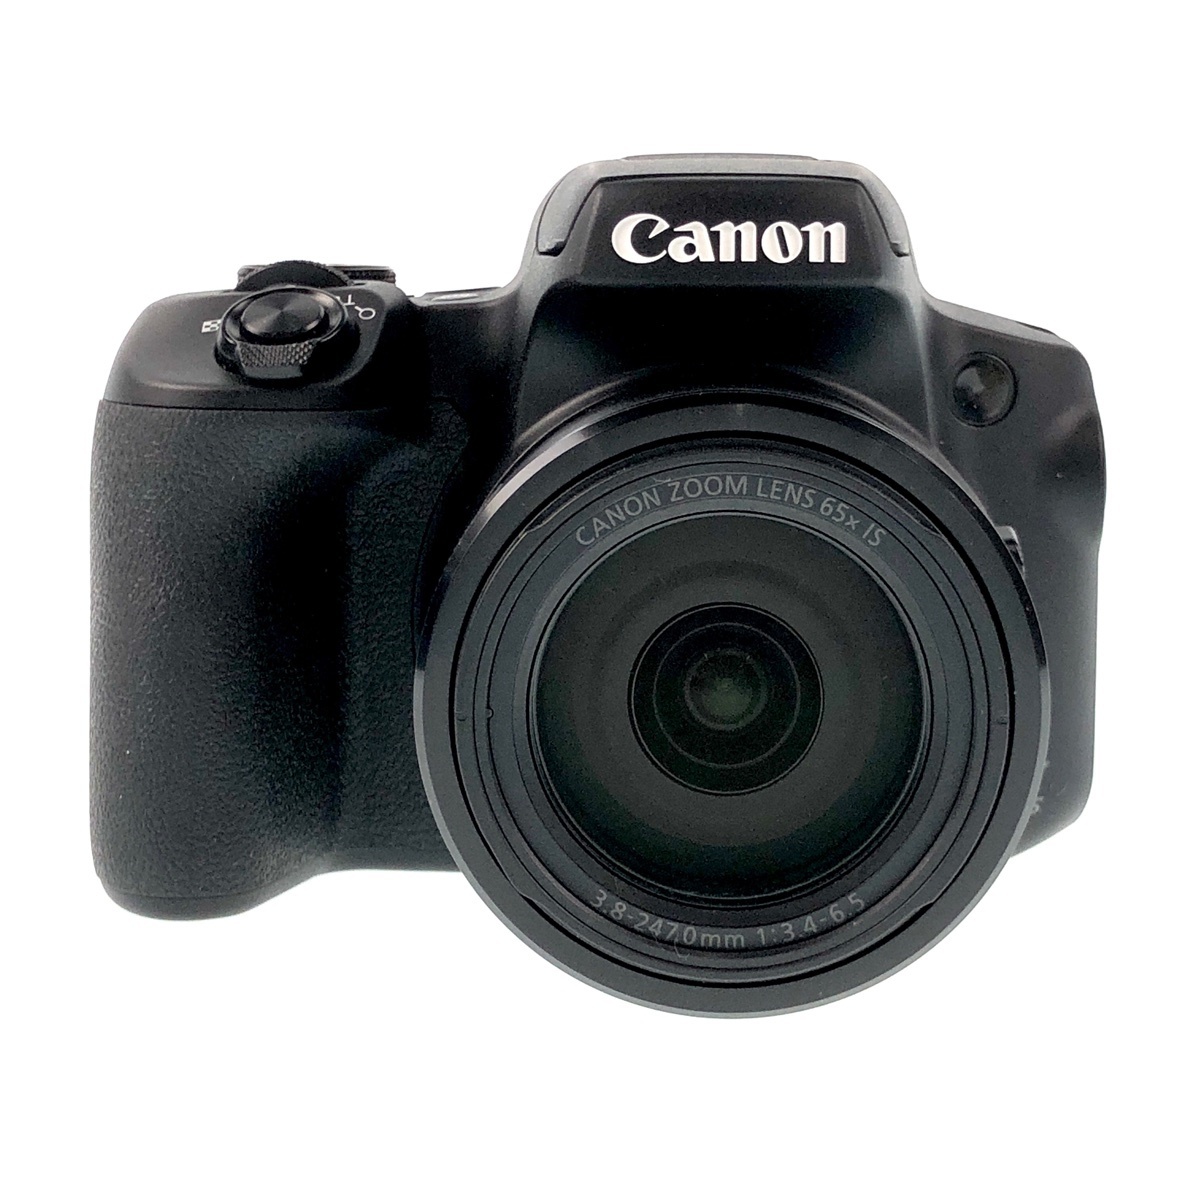 キヤノン Canon PowerShot SX70HS コンパクトデジタルカメラ 【】 www